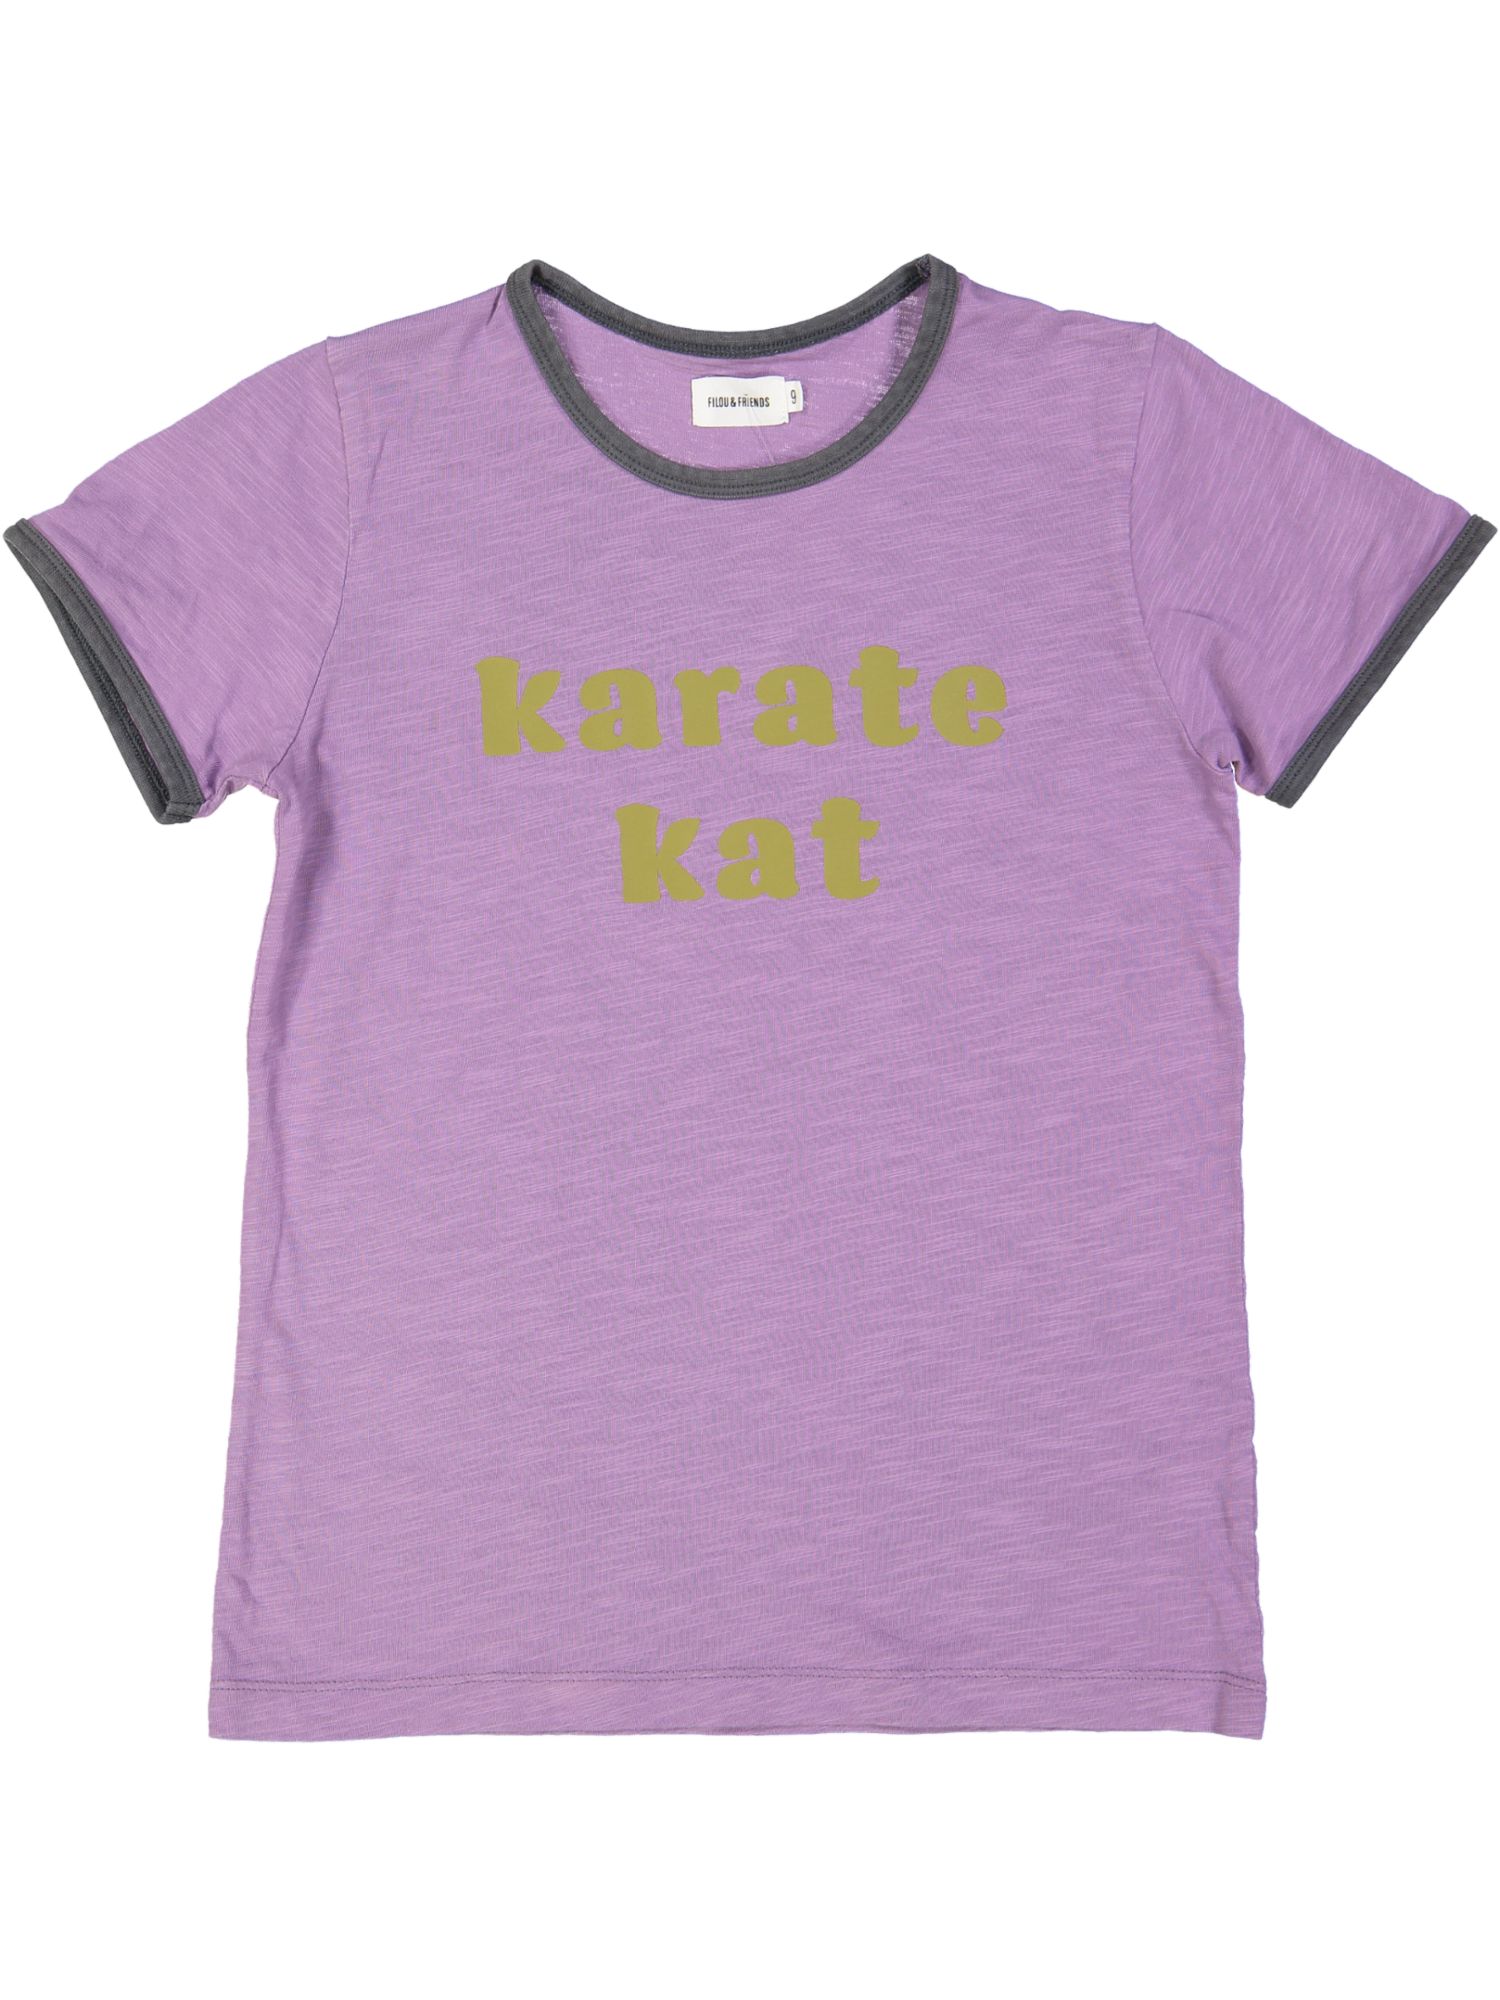 t-shirt paars karate kat 09j .